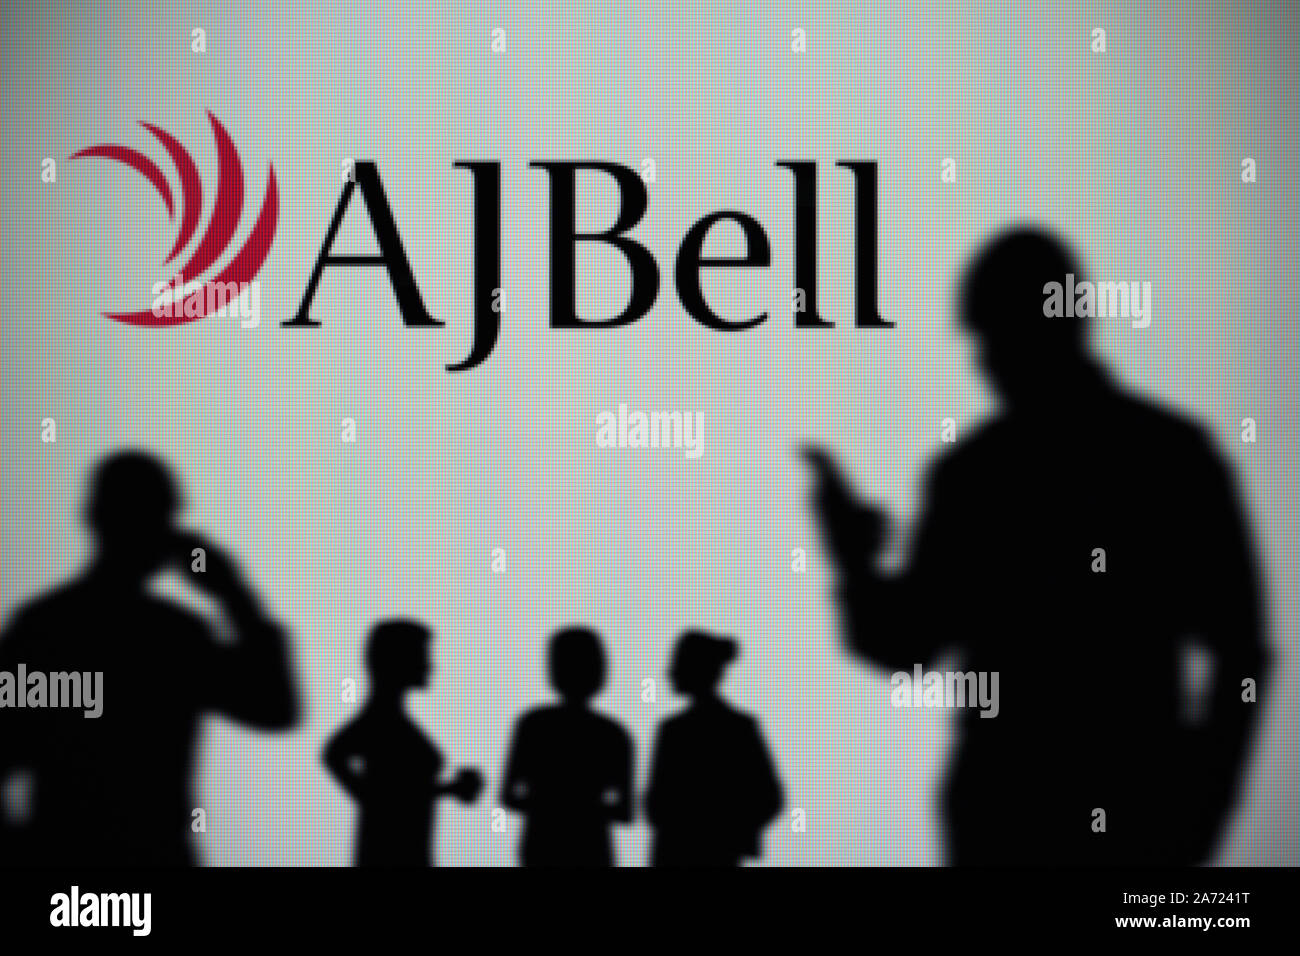 El AJ Bell logotipo es visto en una pantalla LED en el fondo mientras una silueta persona utiliza un smartphone (uso Editorial solamente) Foto de stock